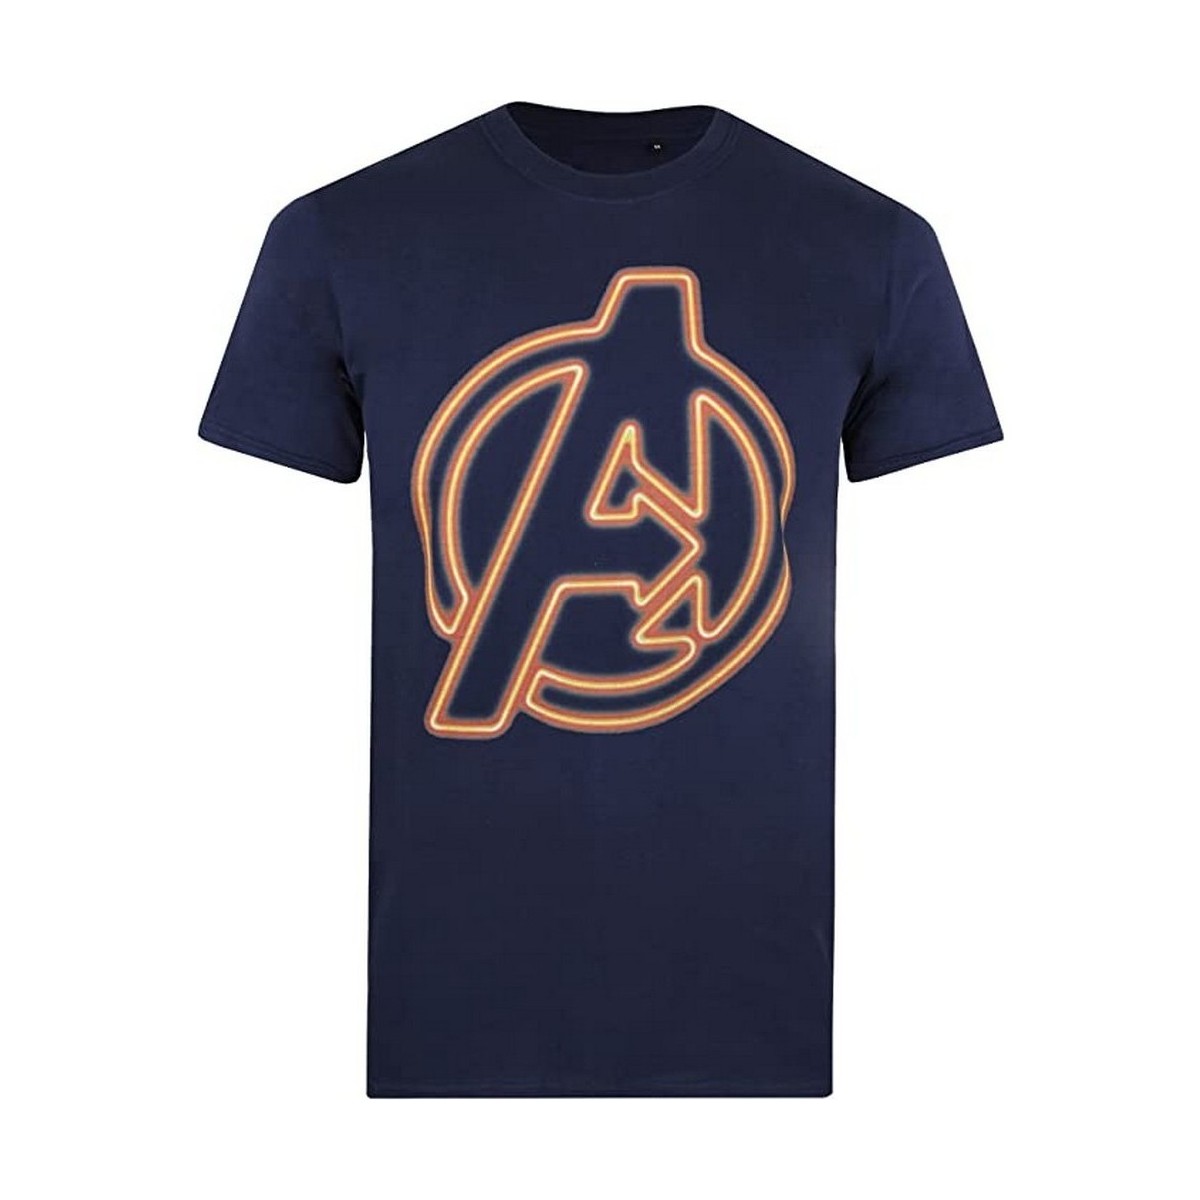 textil Hombre Camisetas manga larga Avengers TV773 Naranja